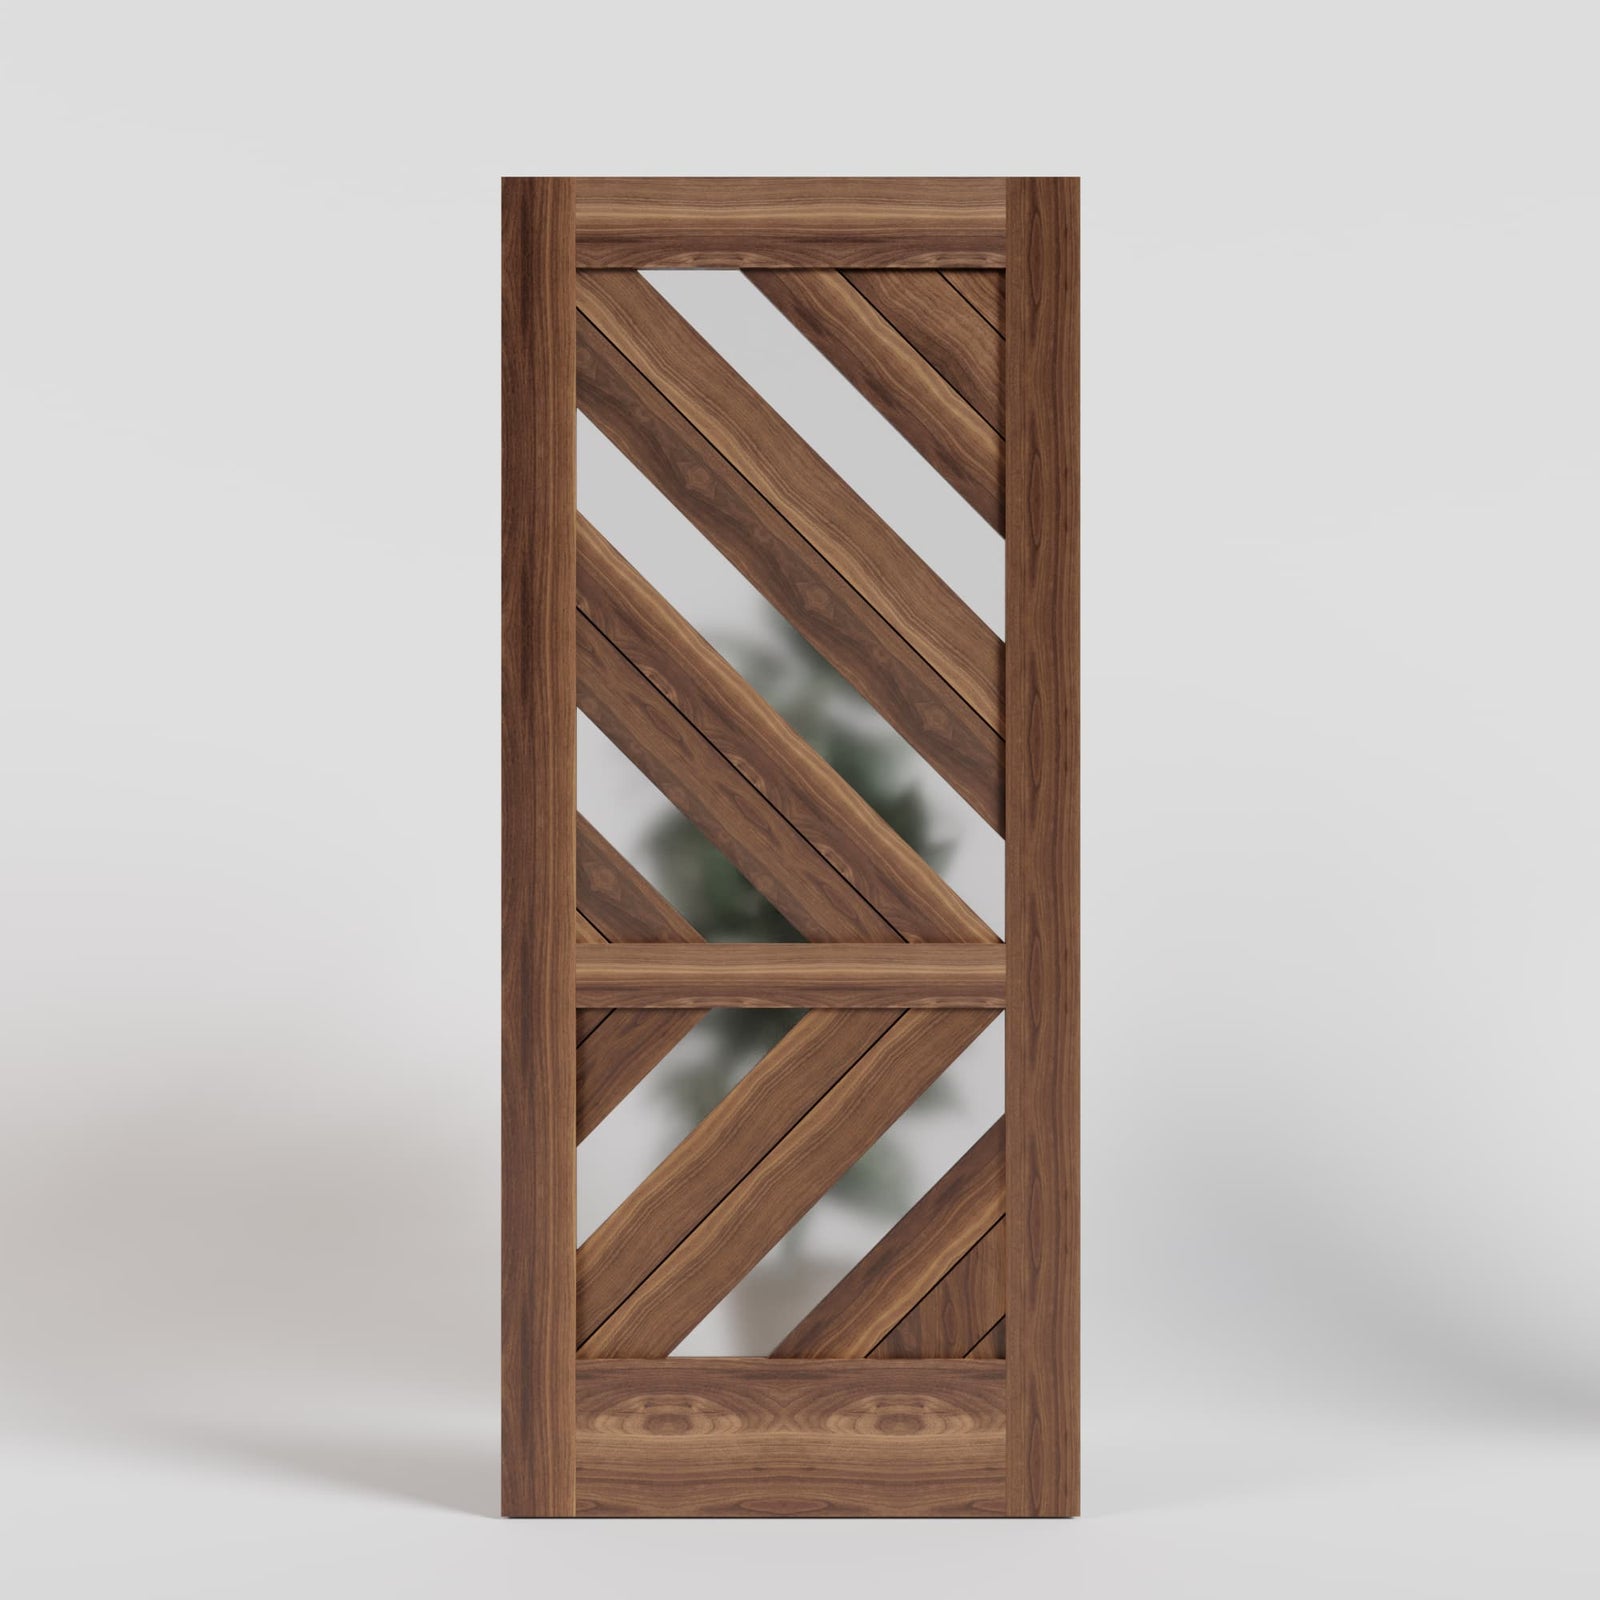 Entry Prehung Oval Glass Single Wood Door with 2 Sidelights  Home door  design, Wood front doors, Wooden front door design